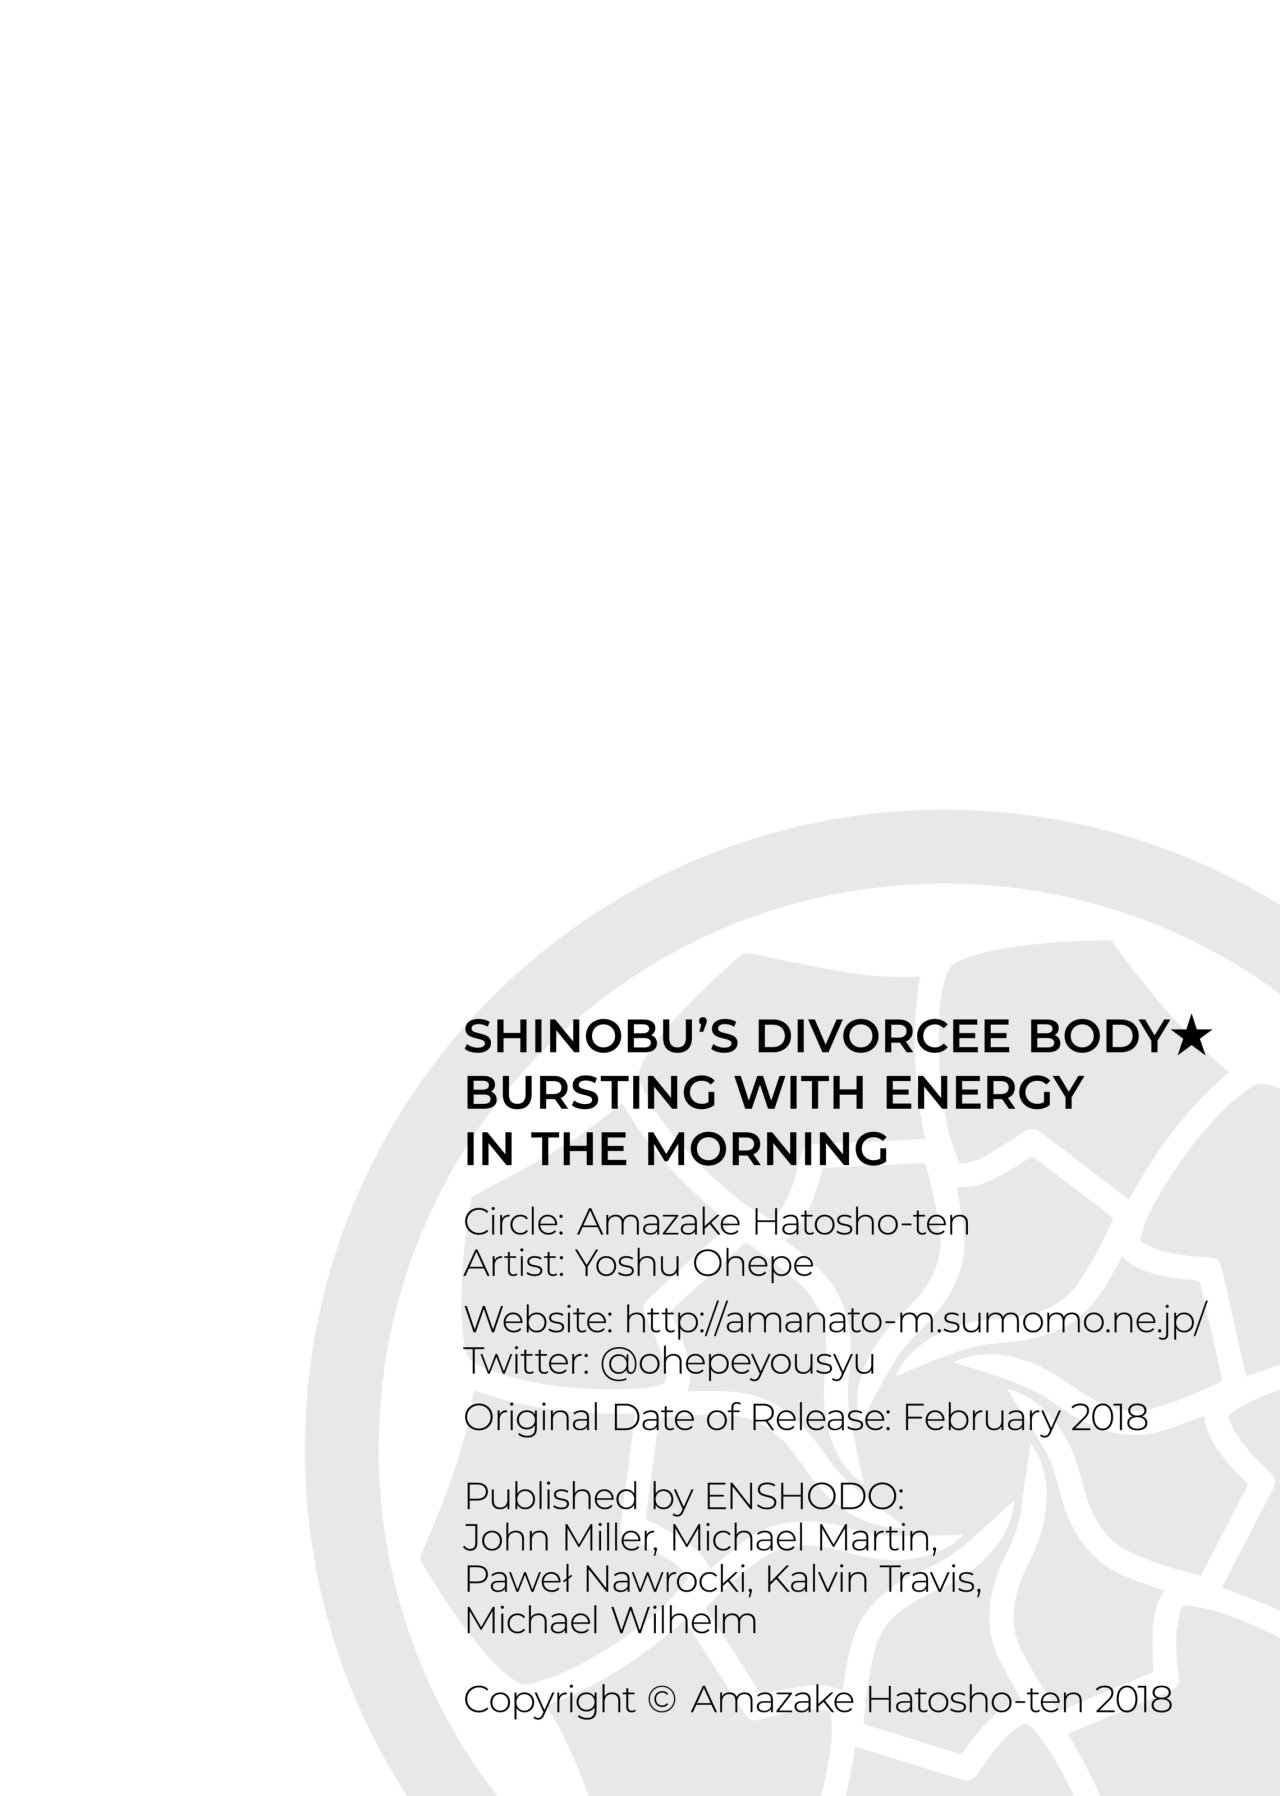 El cuerpo divorciado de shinobu - 3b - 18